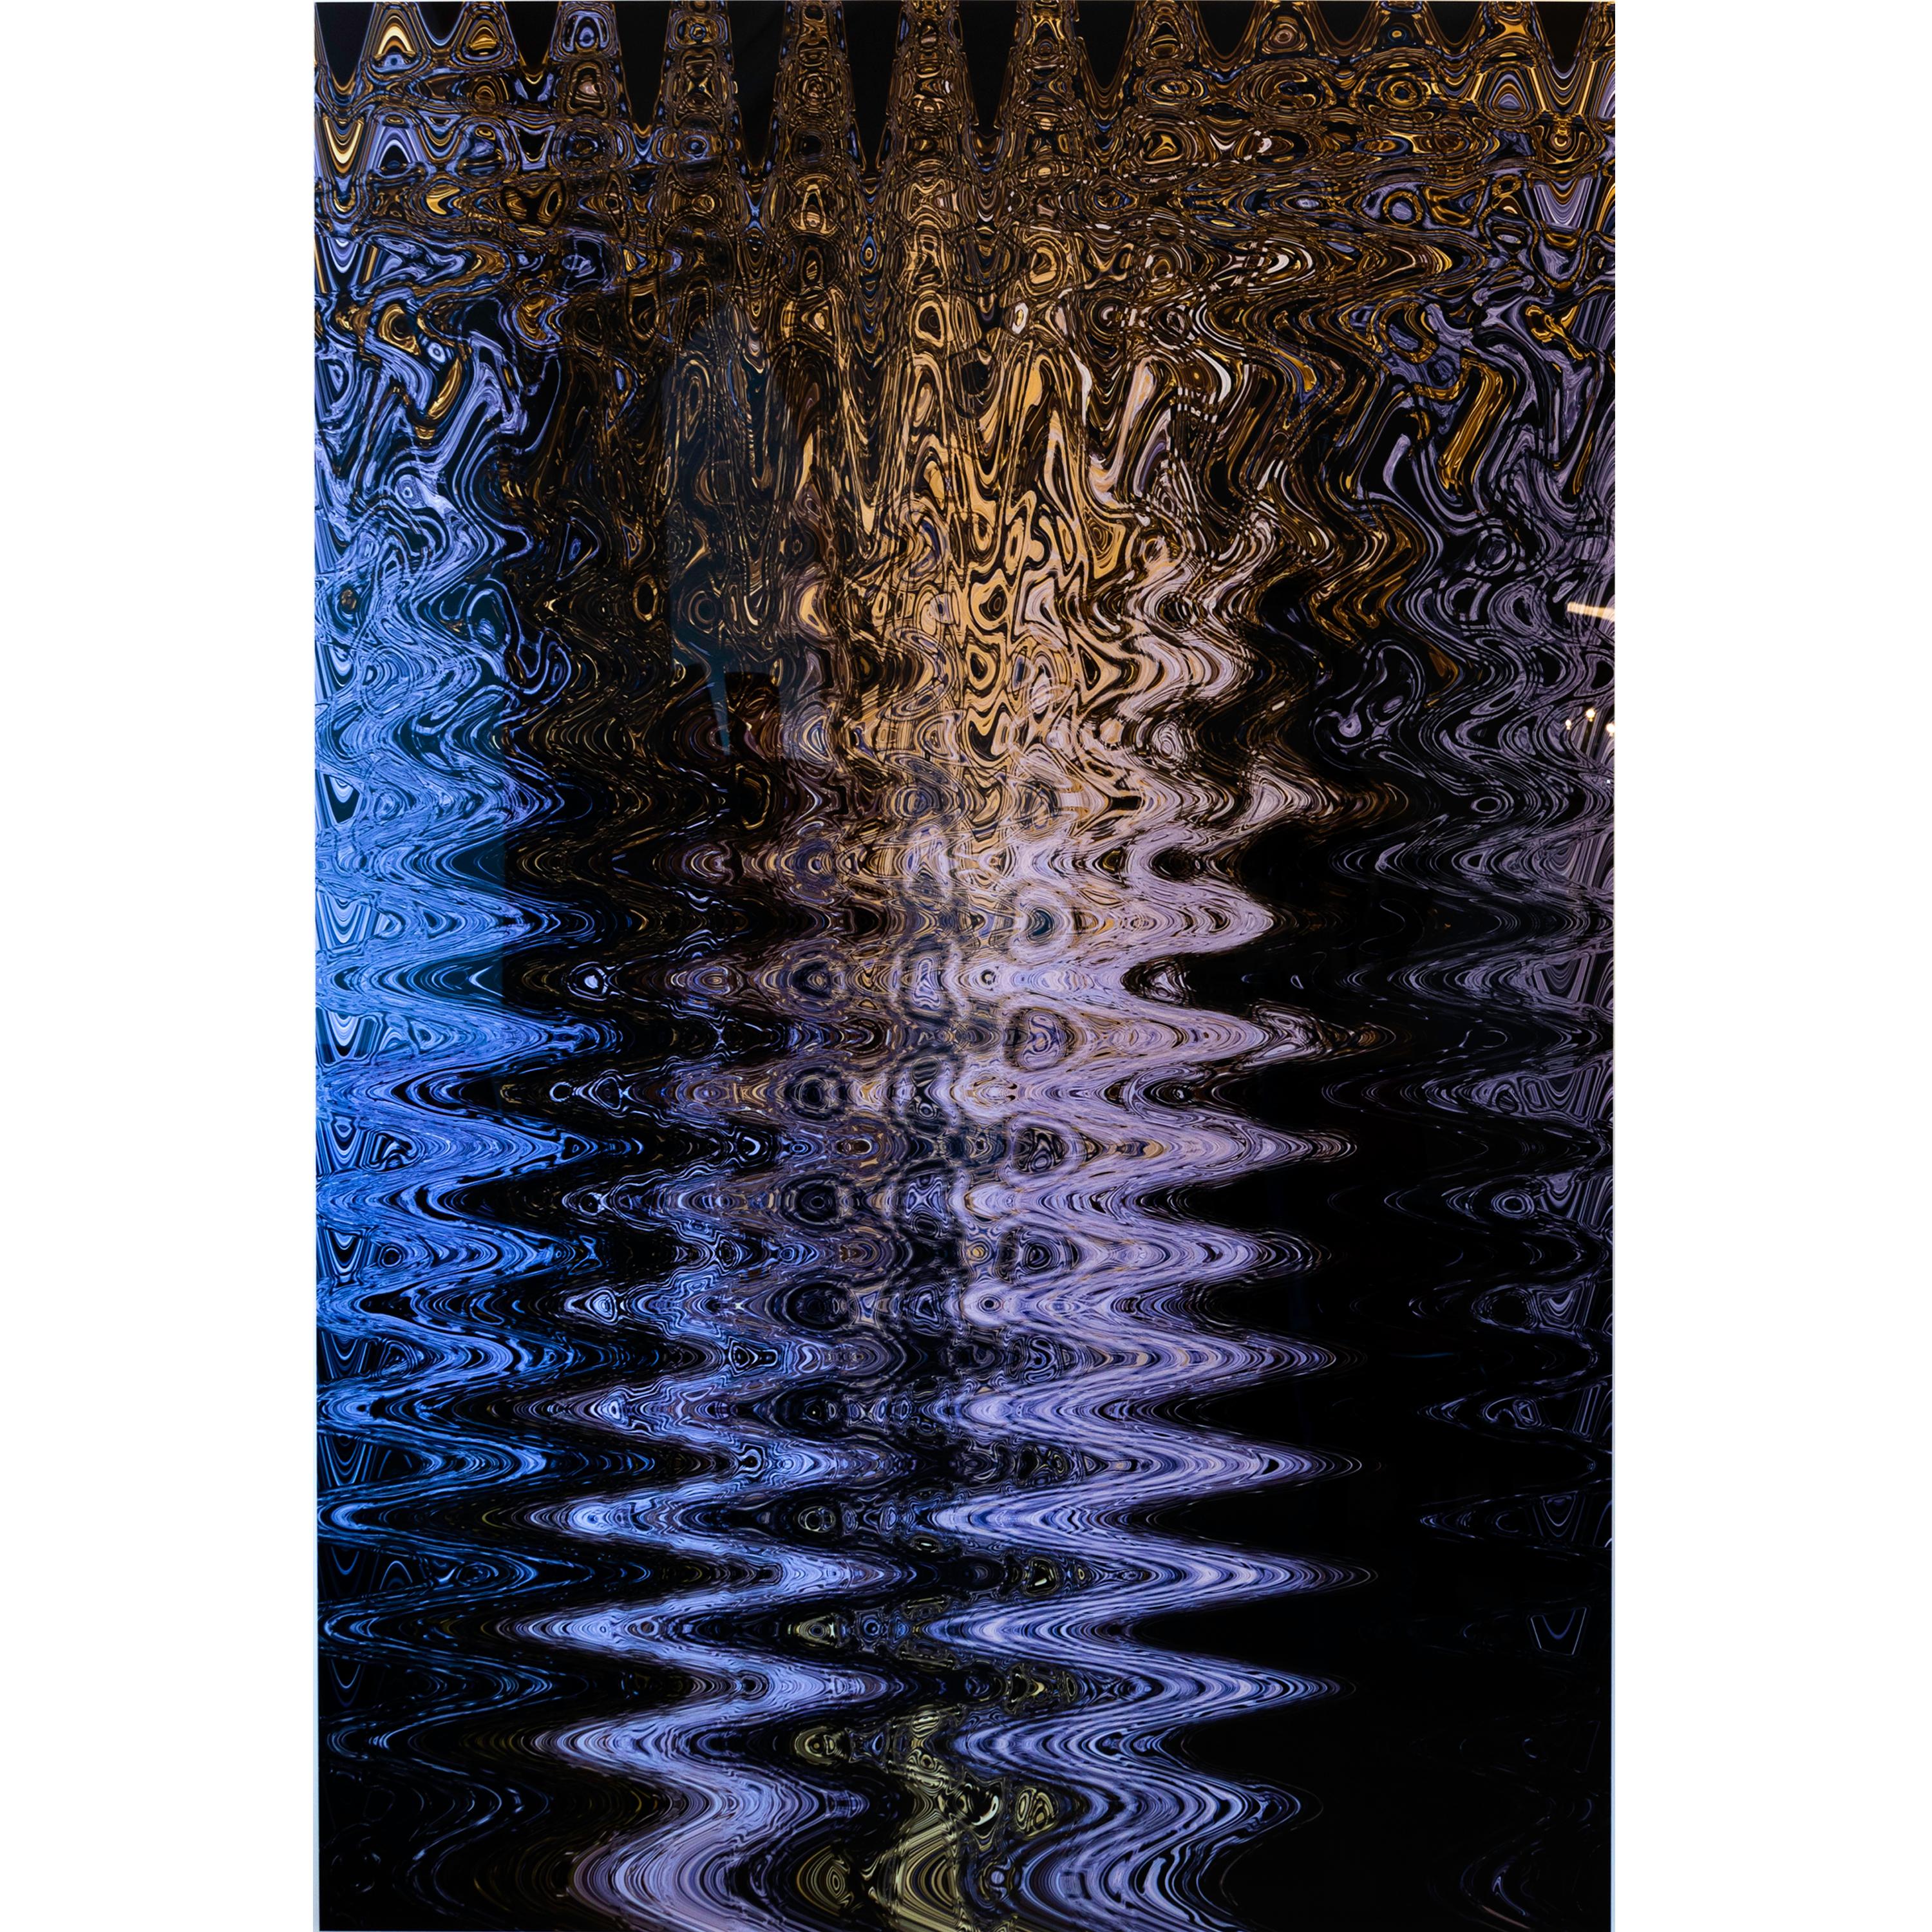 Tirage lambda grand format encadré derrière verre "N4 9192" de la série "Réalité du réel" de 2020. édition 2. Taille de l'image : 210 x 147 cm.